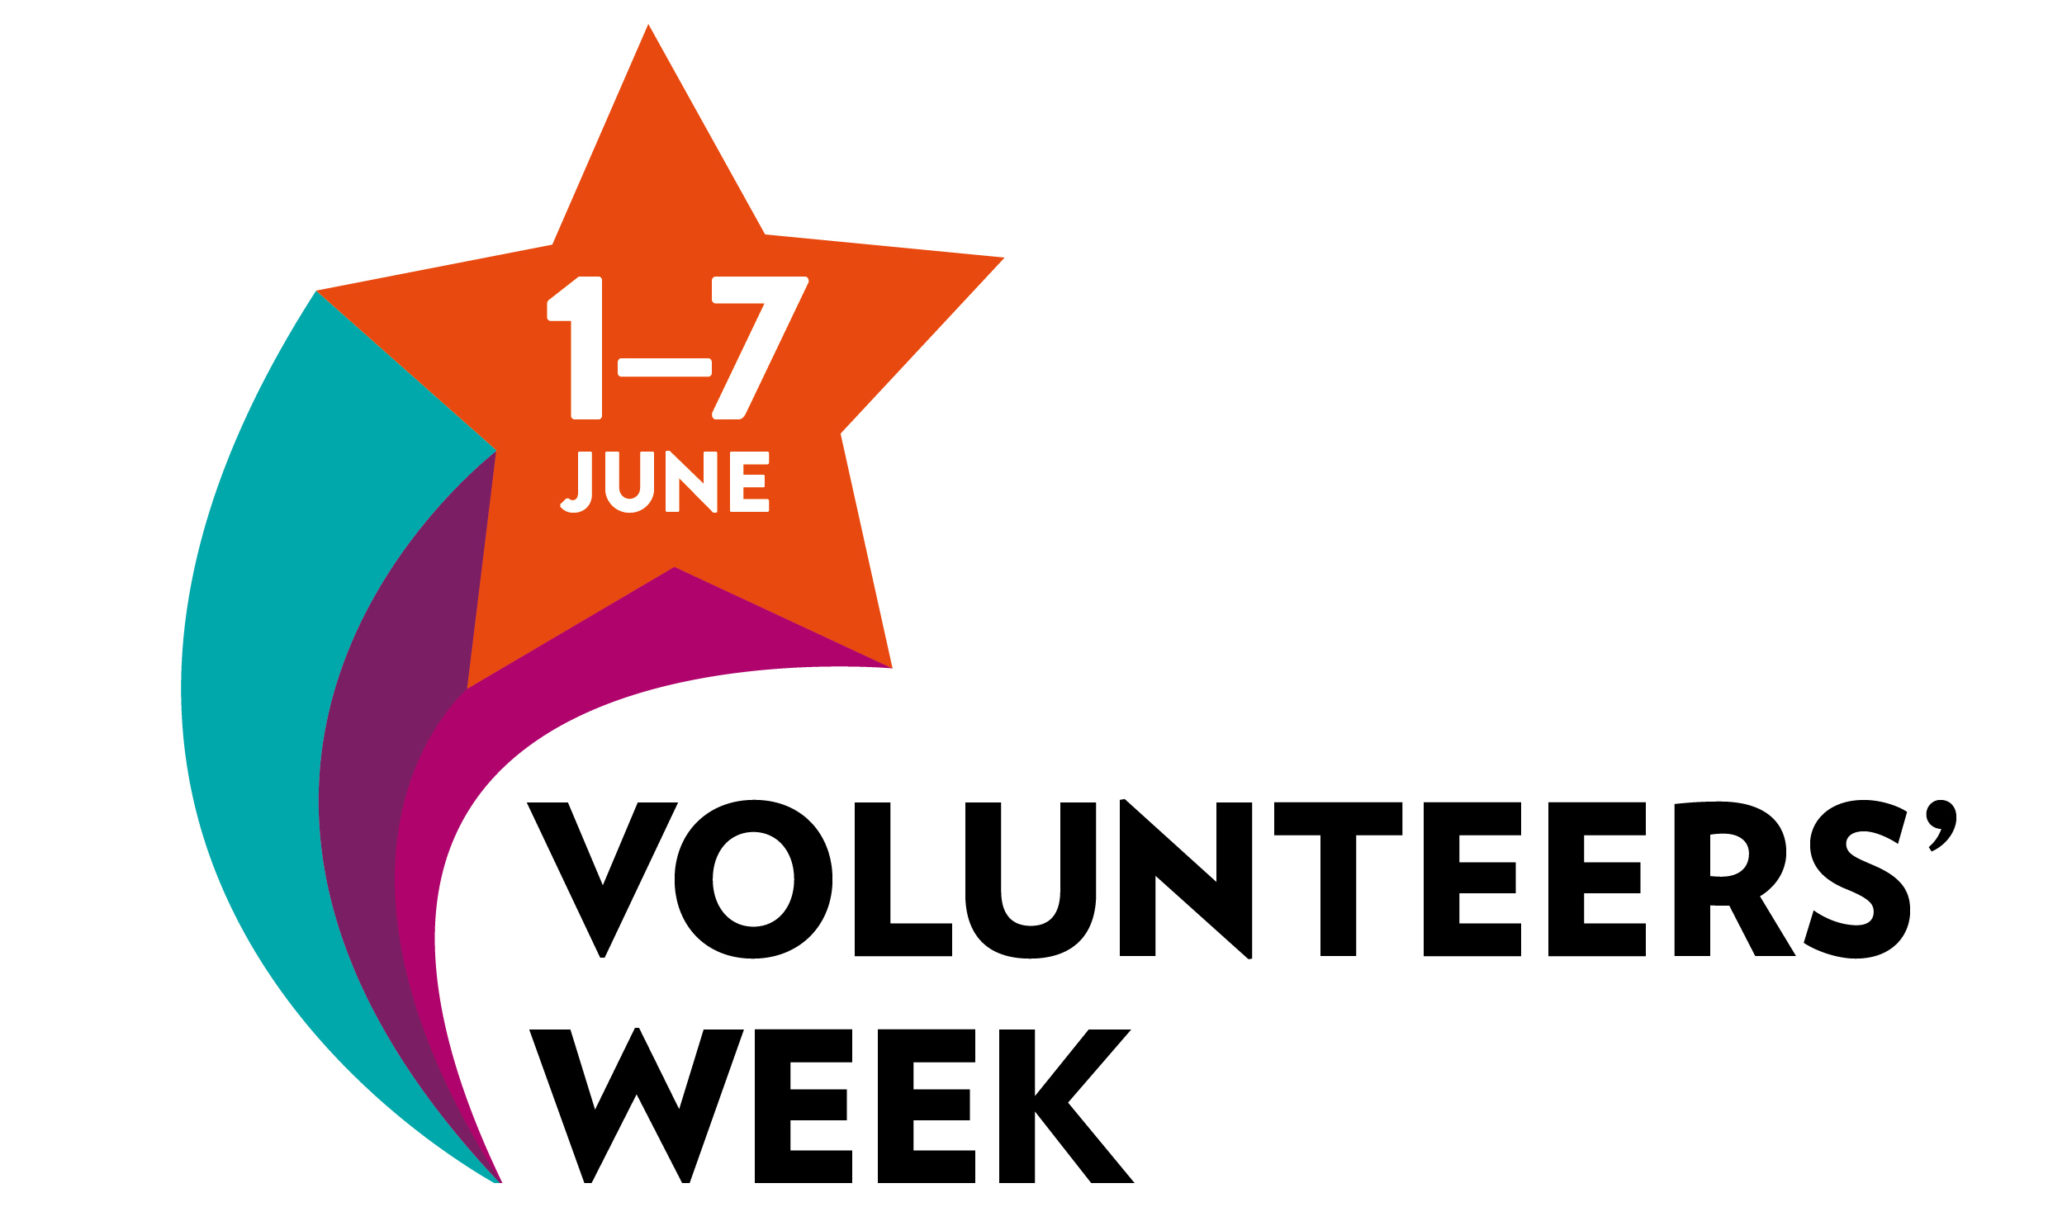 About Volunteers’ Week Volunteers' Week